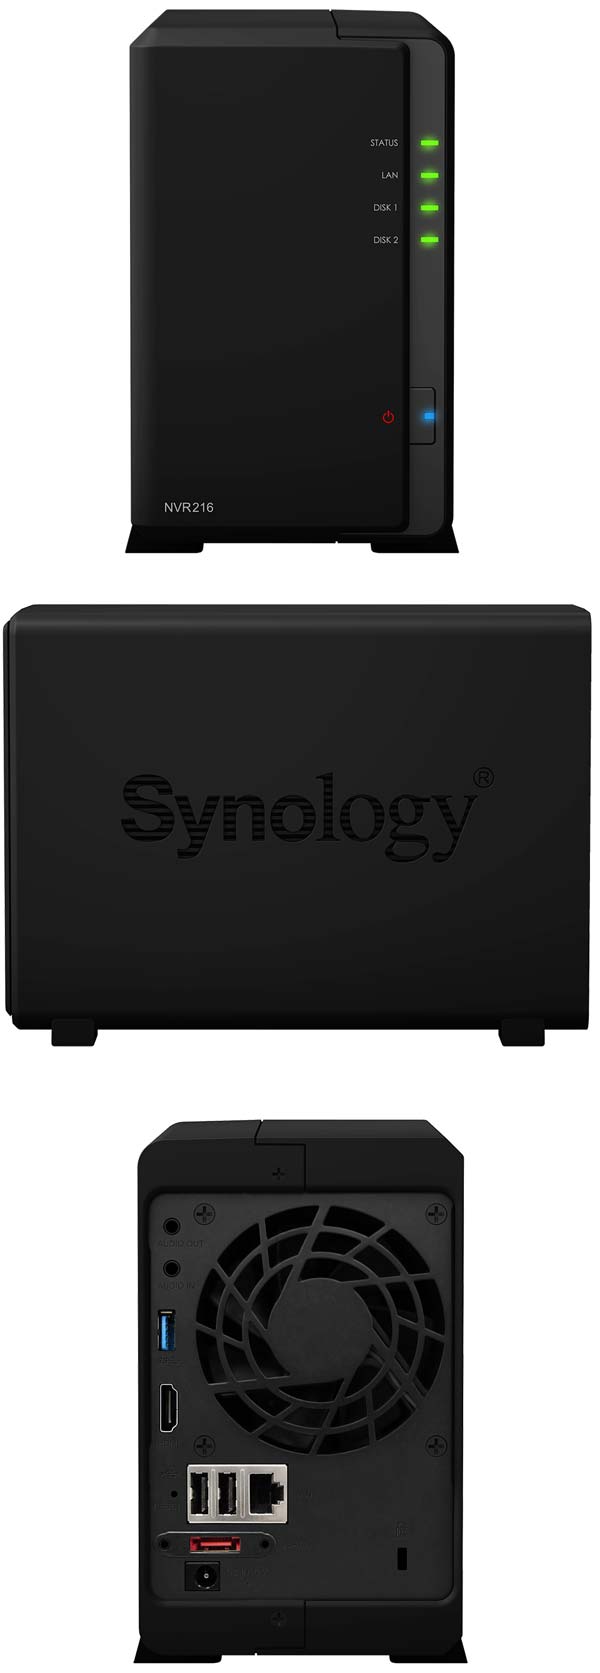 На фото устройство Synology NVR216